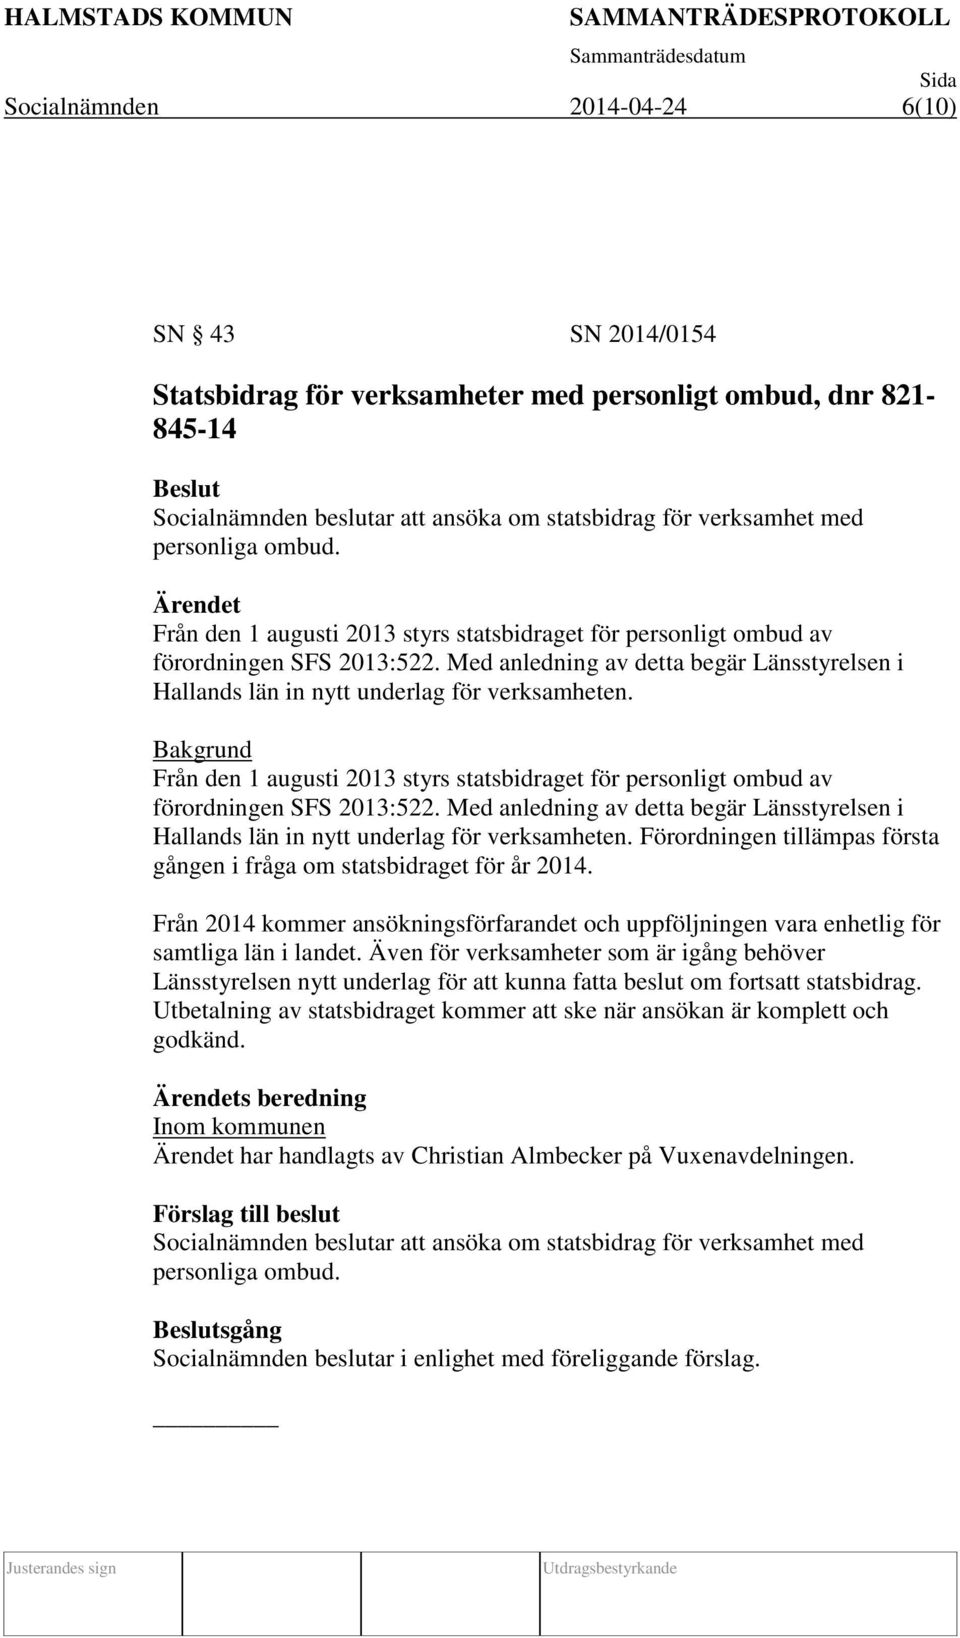 Bakgrund Från den 1 augusti 2013 styrs statsbidraget för personligt ombud av förordningen SFS 2013:522. Med anledning av detta begär Länsstyrelsen i Hallands län in nytt underlag för verksamheten.